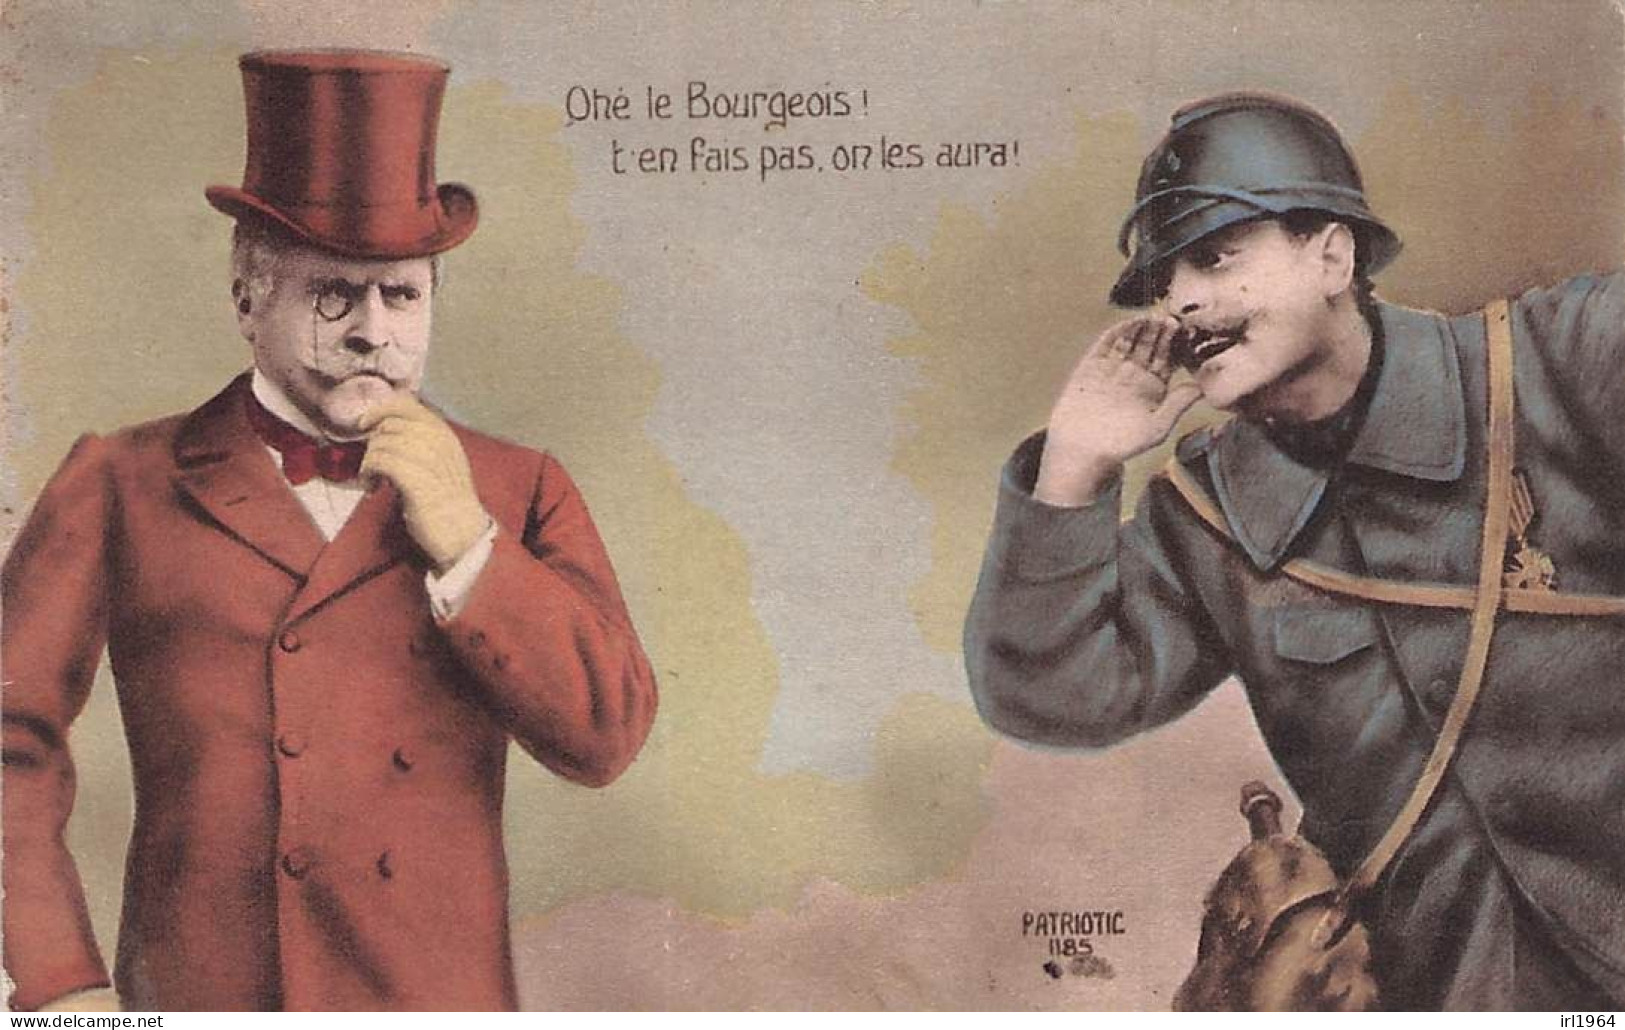 OHE LE BOURGEOIS T'EN FAIT PAS ON LES AURAS 1916 - Patriottisch